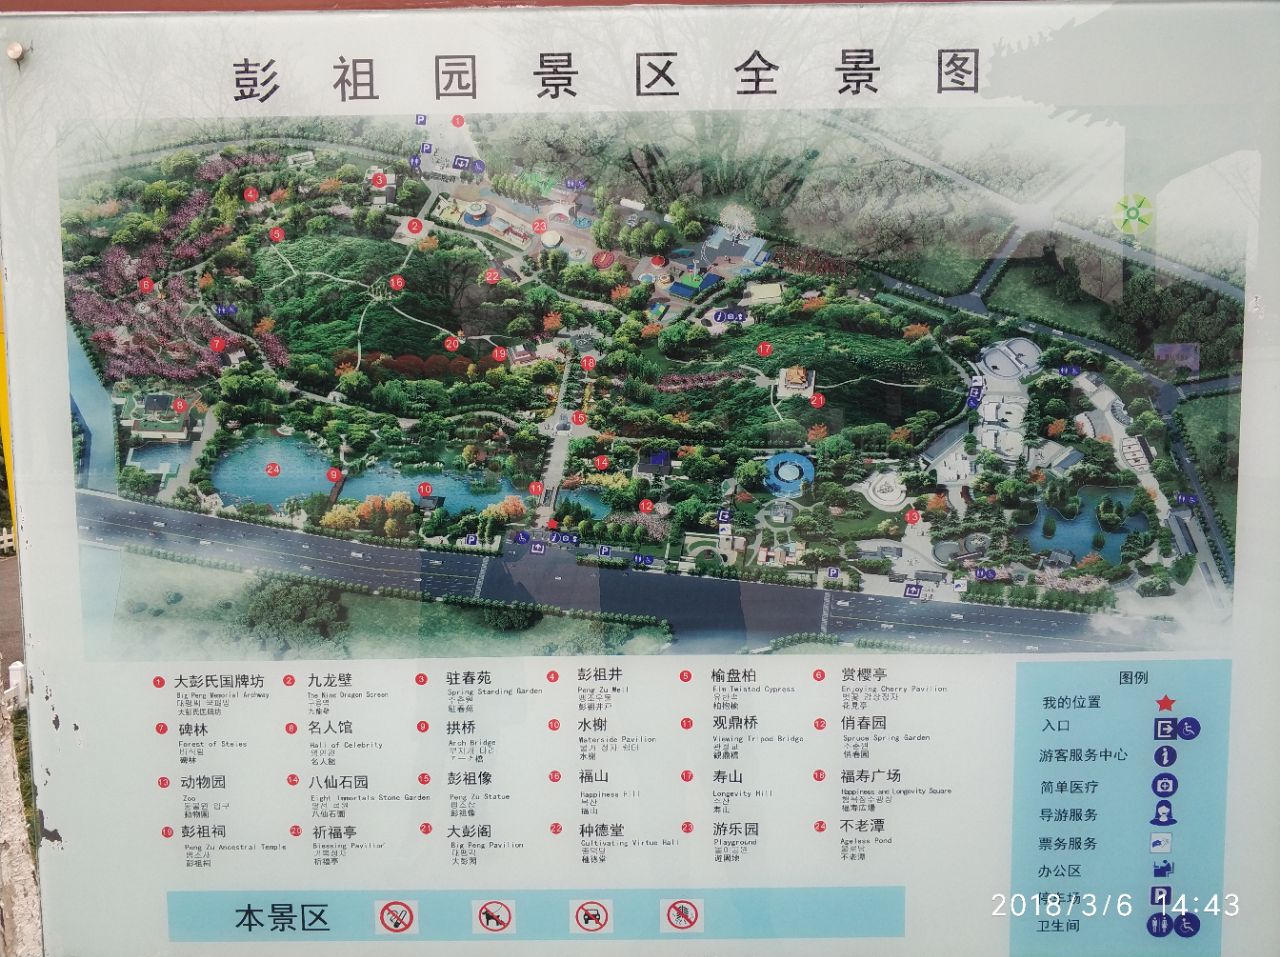 彭祖园地图图片